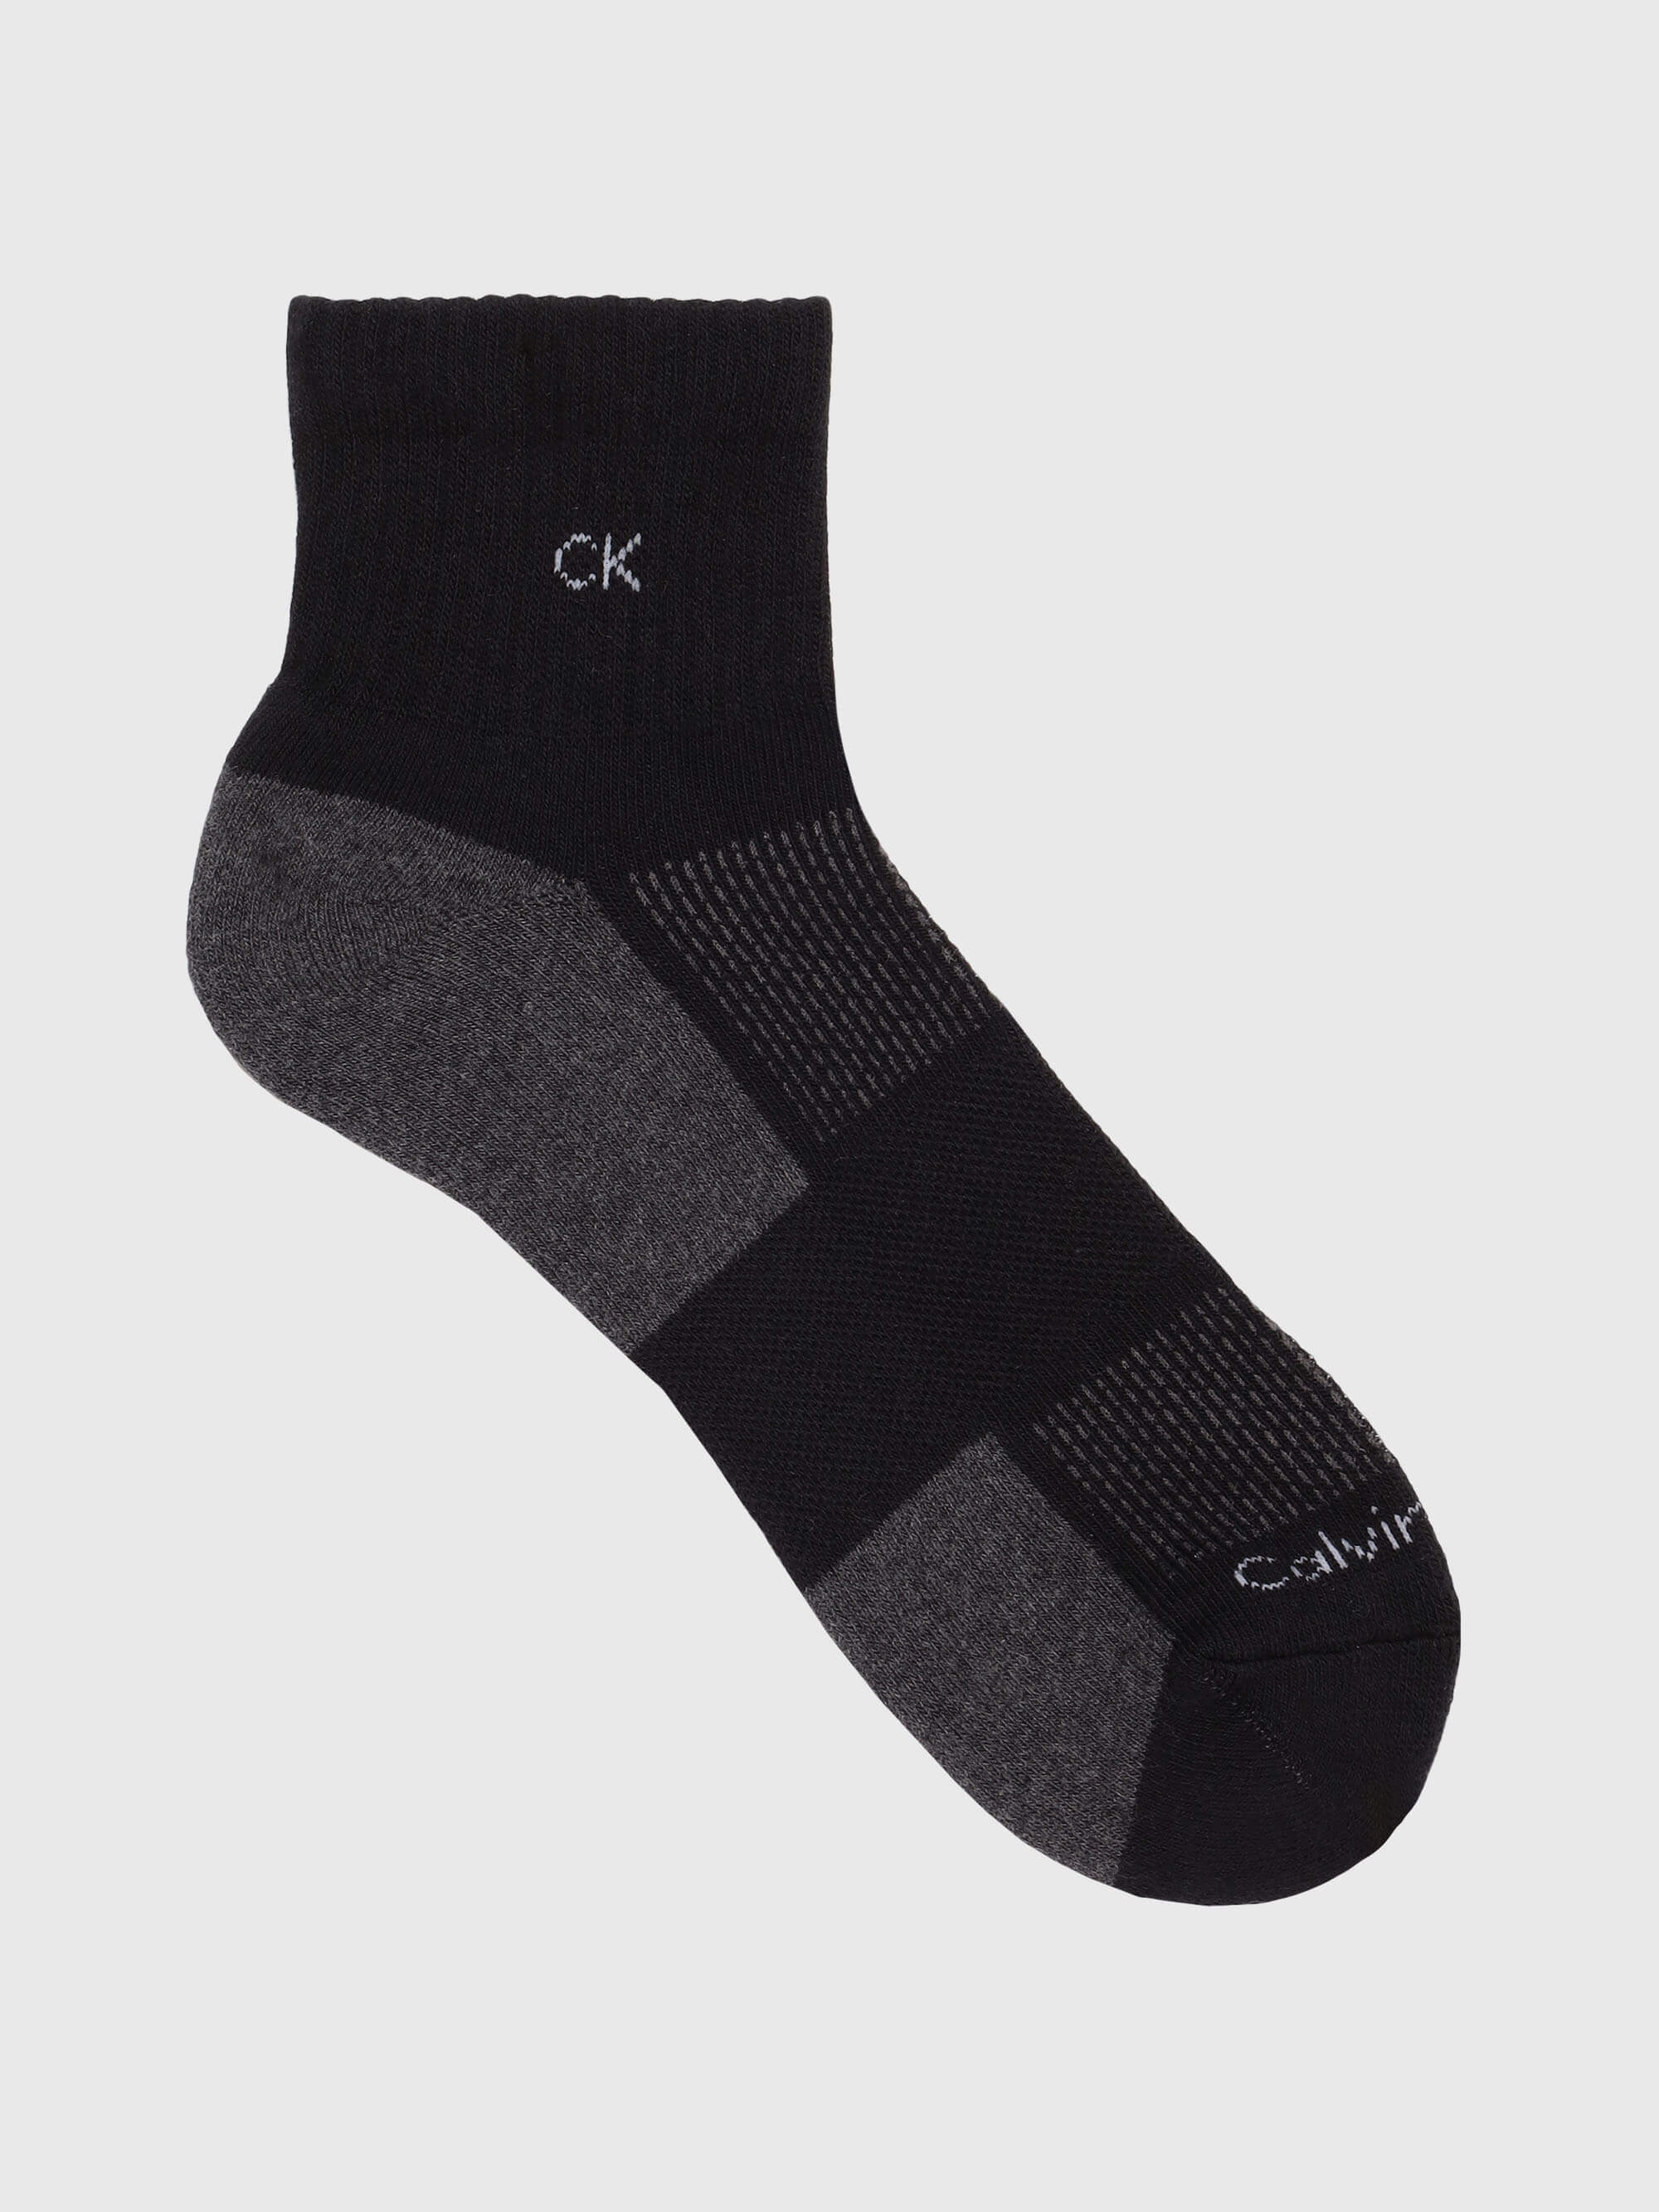 Calcetas Calvin Klein Paquete de 3 Hombre Negro - Talla: Única